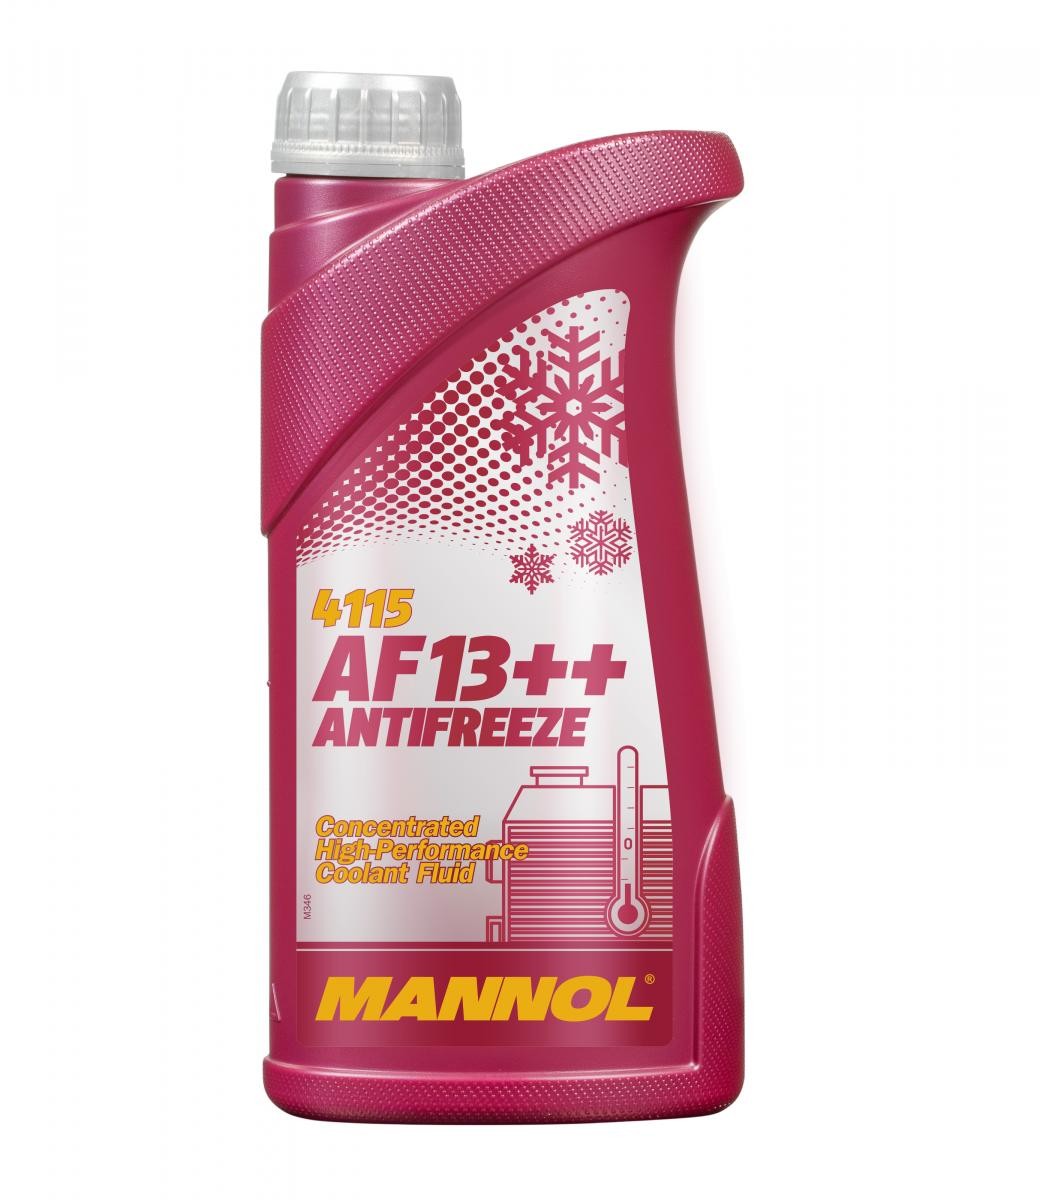 MN4115-1 MANNOL AF13++, High-performance G12 Rot, 1l, -38(50/50) G12 Frostschutz MN4115-1 günstig kaufen